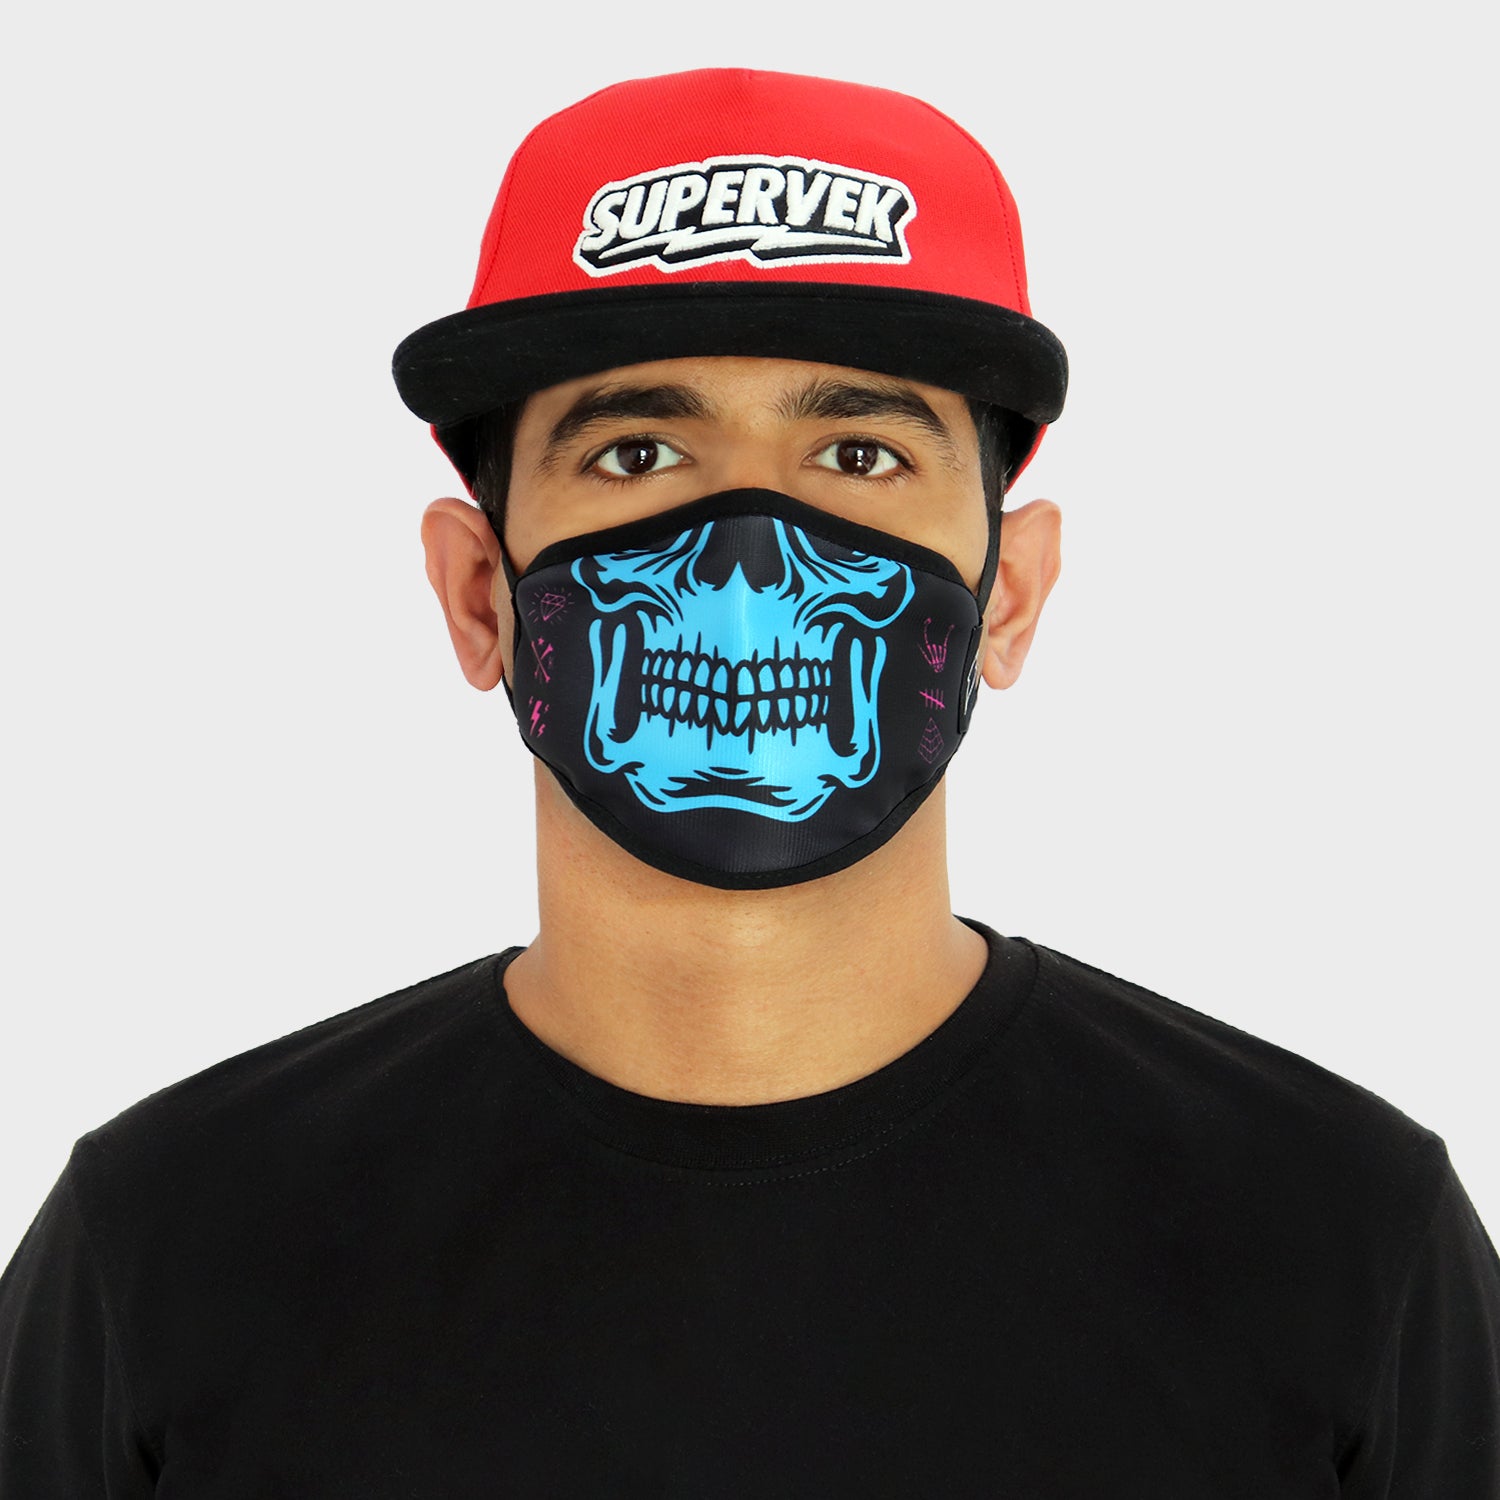 Skuller Face Mask - Supervek India, smsk-sklr-1, smsk-sklr-2